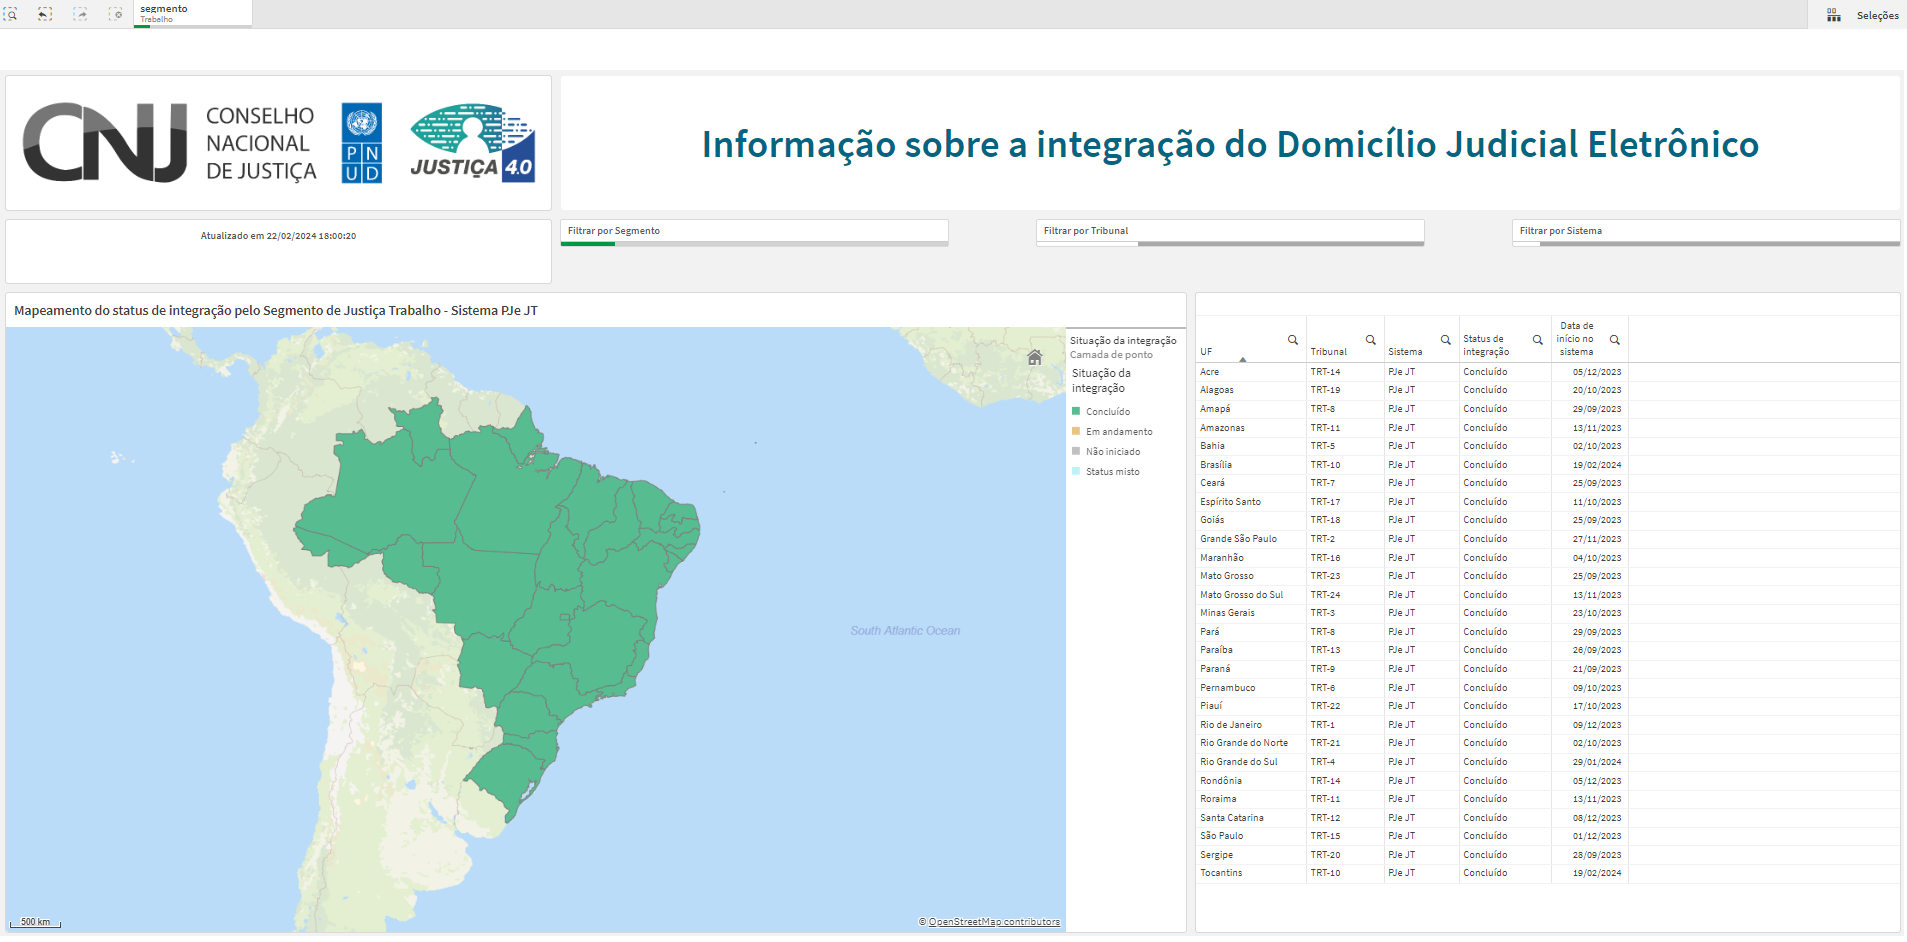 Print de painel do CNJ. Mostra o mapa do Brasil completo e a lista de todos os 24 TRTs com a situação "concluido".